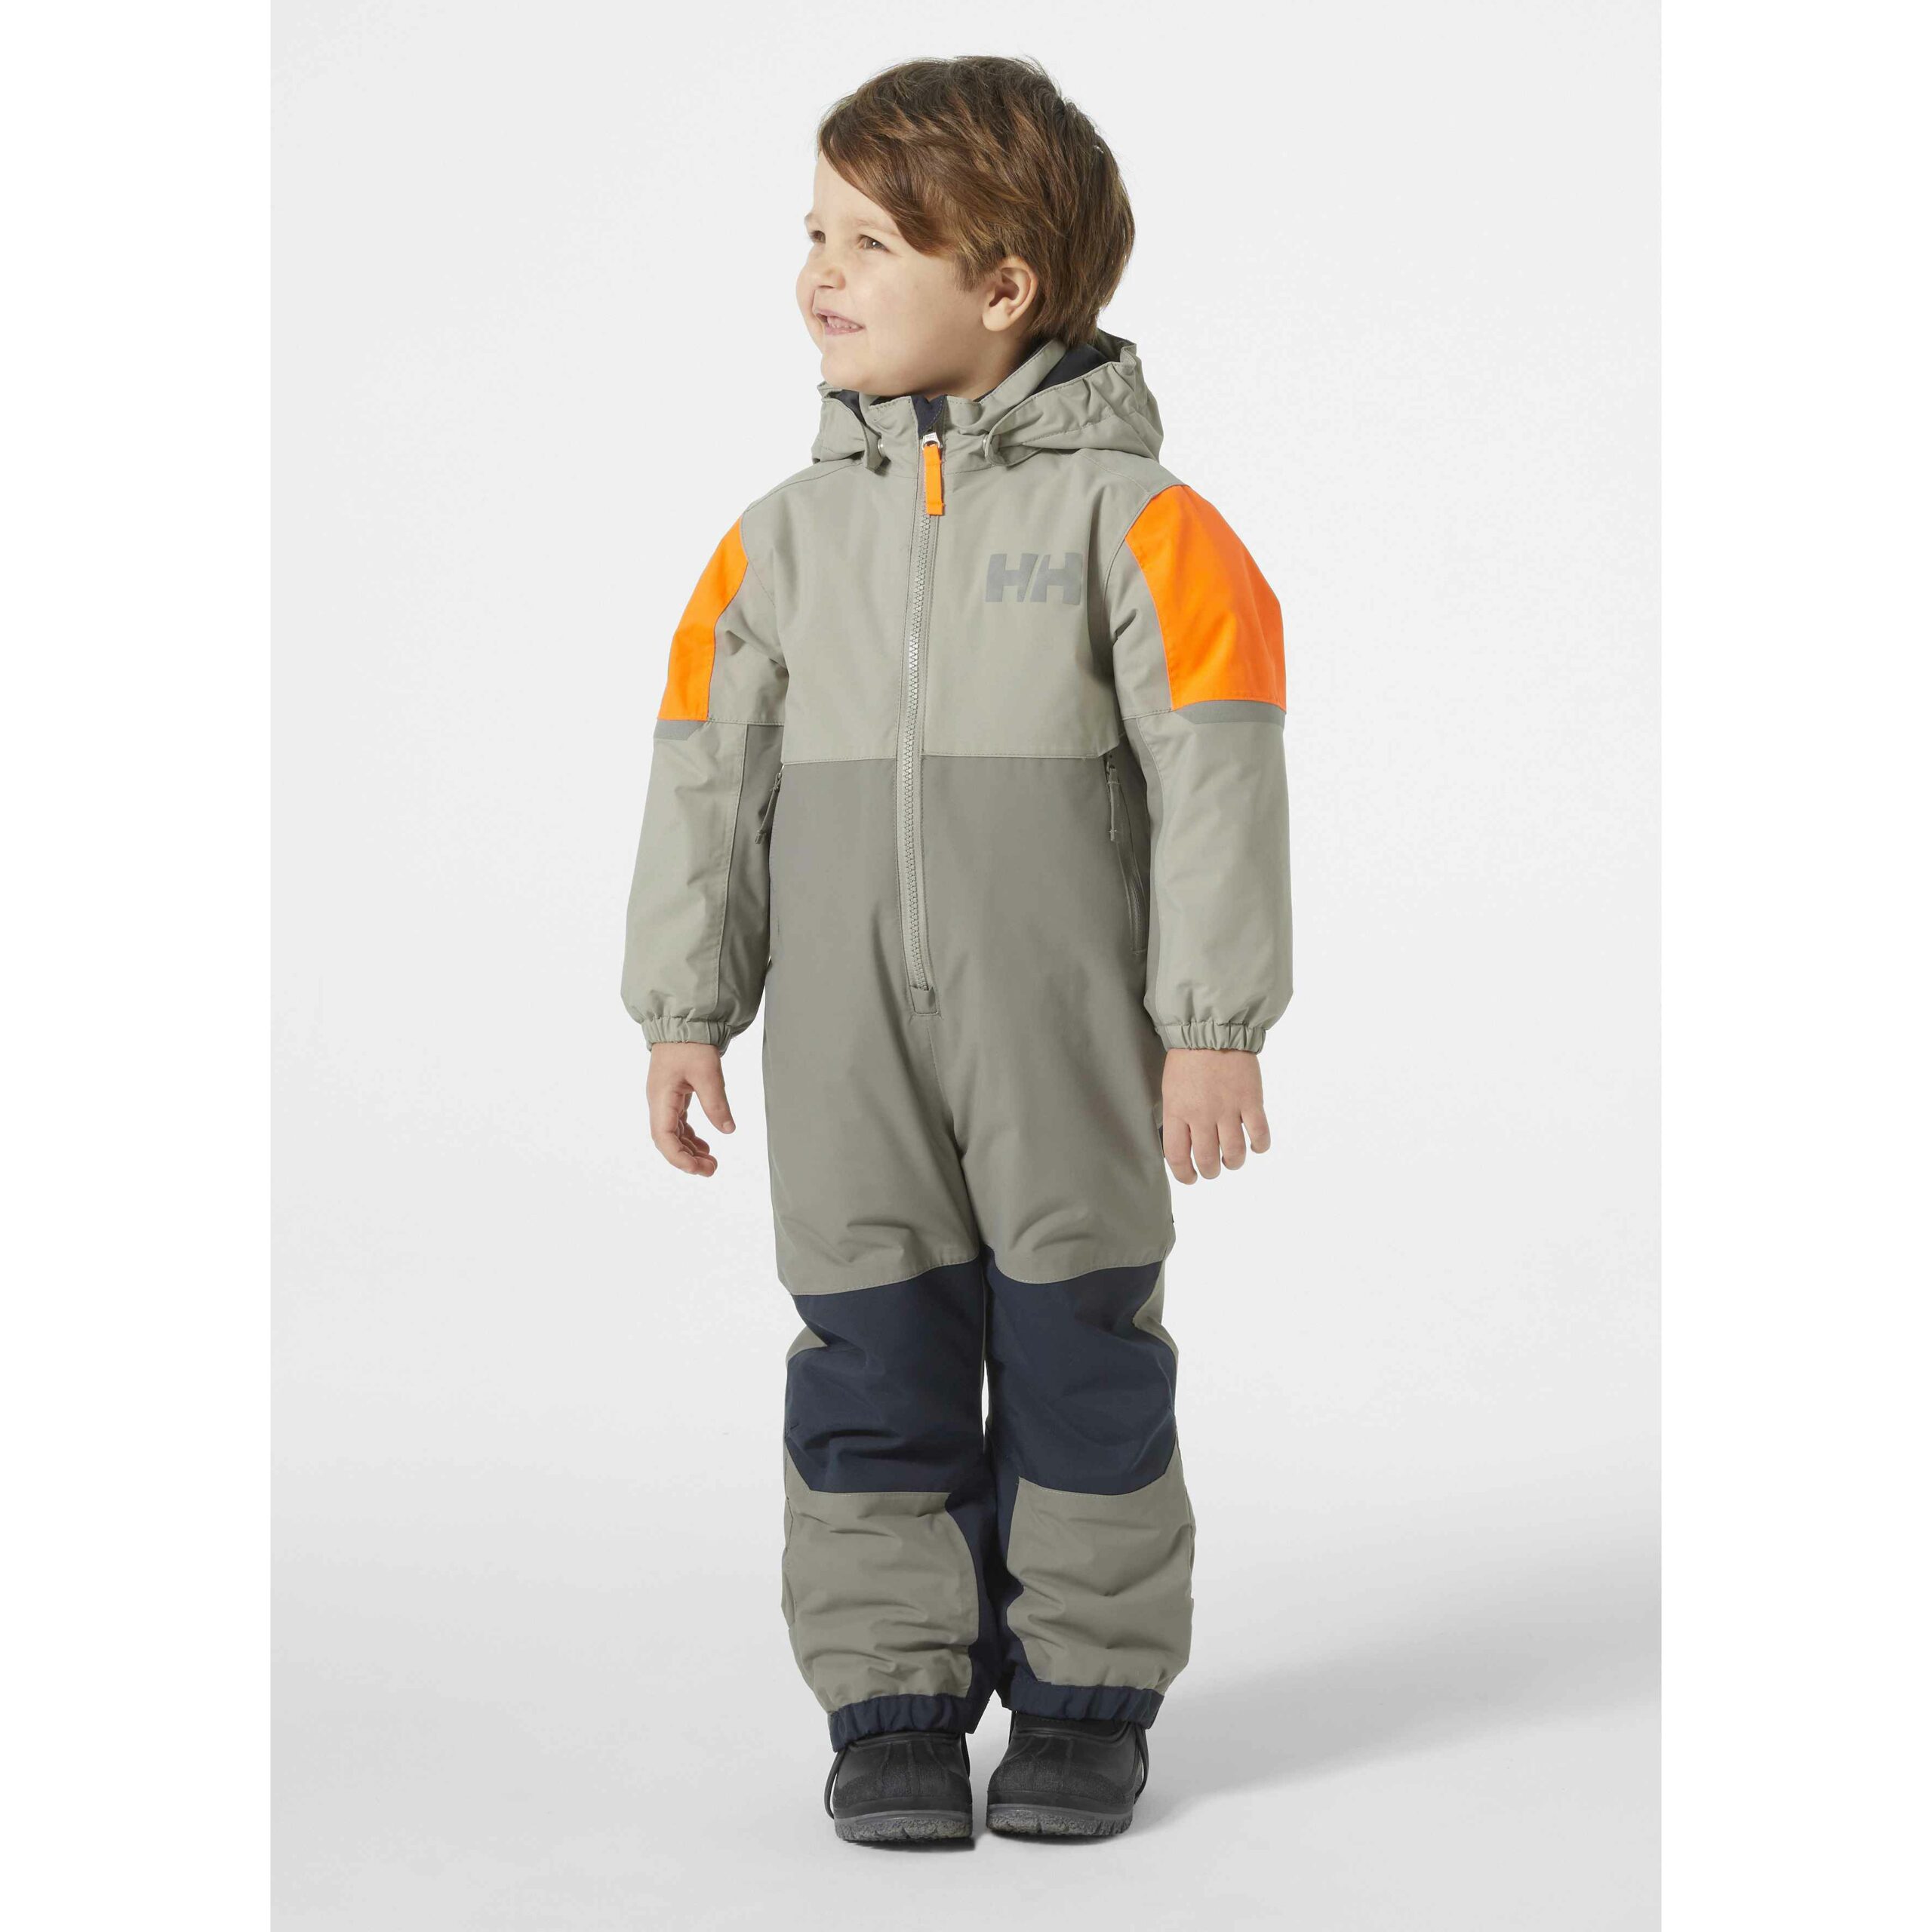 Helly Hansen Kids Unisex Rider 2.0 Insulated Suit, Big Weather Gear